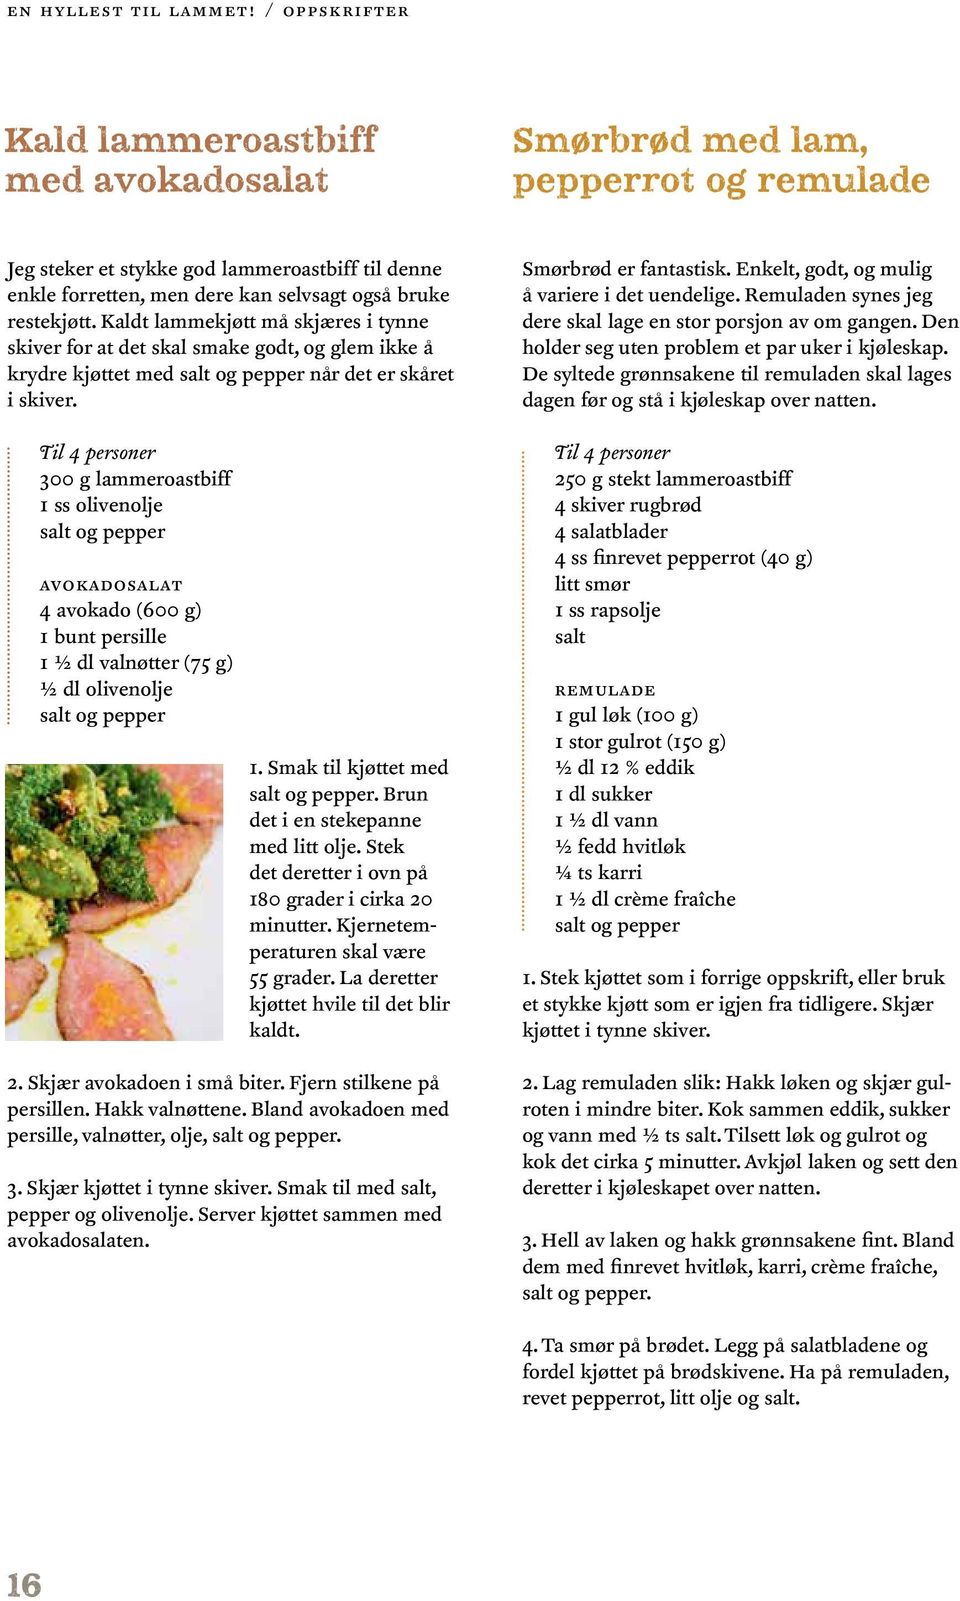 Til 4 personer 300 g lammeroastbiff 1 ss olivenolje avokadosalat 4 avokado (600 g) 1 bunt persille 1 ½ dl valnøtter (75 g) ½ dl olivenolje 1. Smak til kjøttet med.